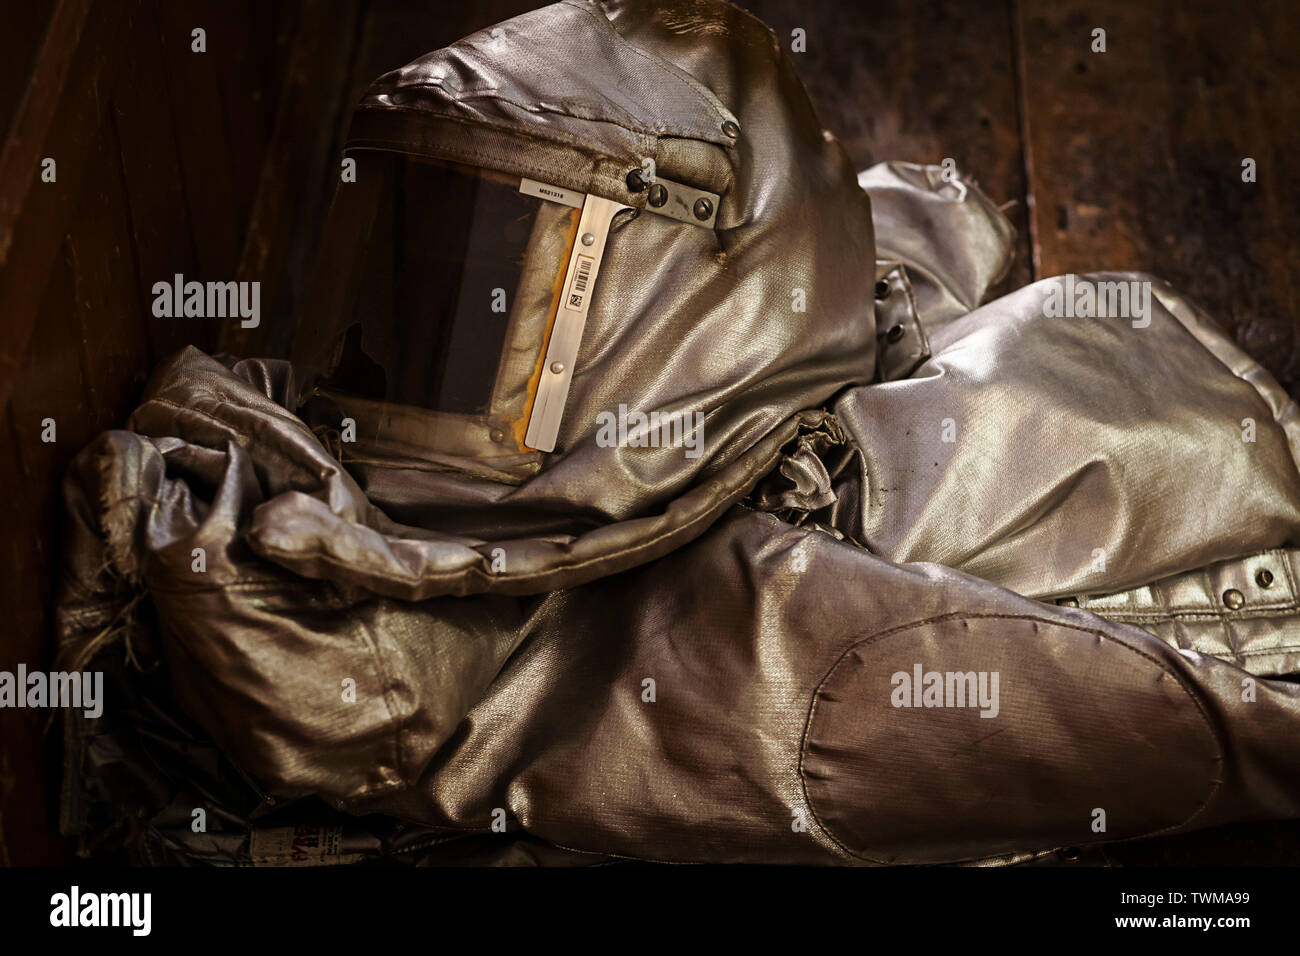 Ein Zusammengeklappt leicht beschädigte Brand nähe Anzug auch als Bunker Anzug auf einem Holzboden bekannt. Es ist ein sichtbares Loch in das Visier der Klage. Stockfoto